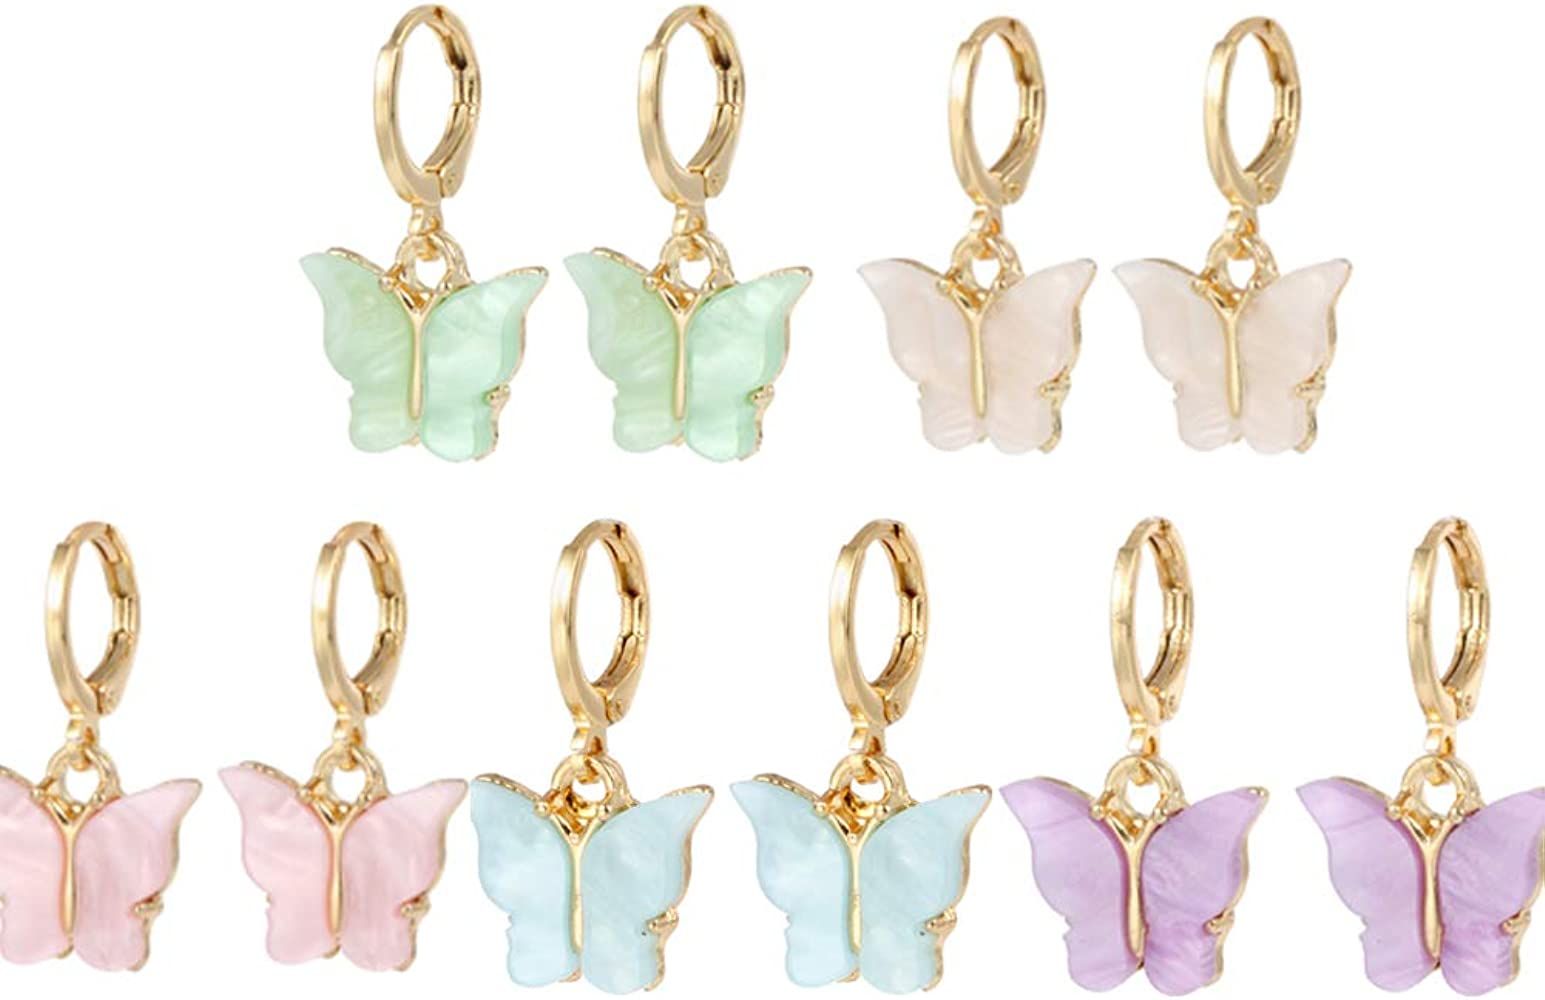 Butterfly Earrings Tiny Hoop Earrings Colorful Acrylic Butterfly Earrings For Women Girls (Small ... | Amazon (US)